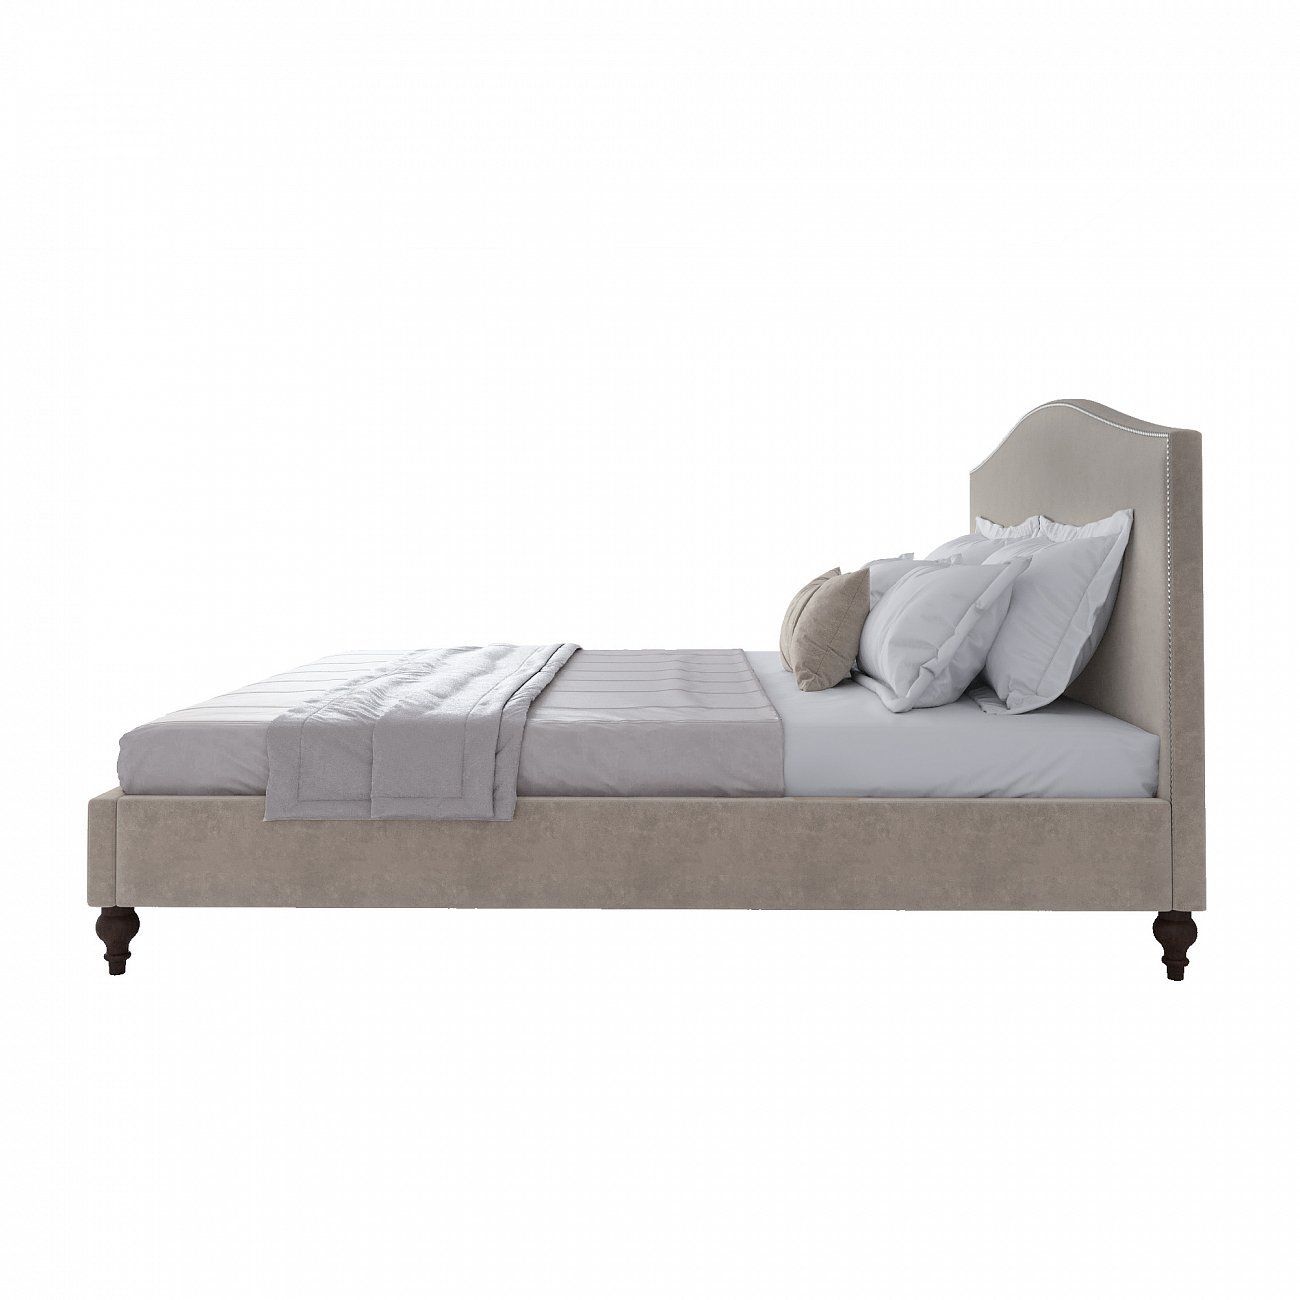 Кровать двуспальная с мягким изголовьем 180х200 см бежевая Fleurie